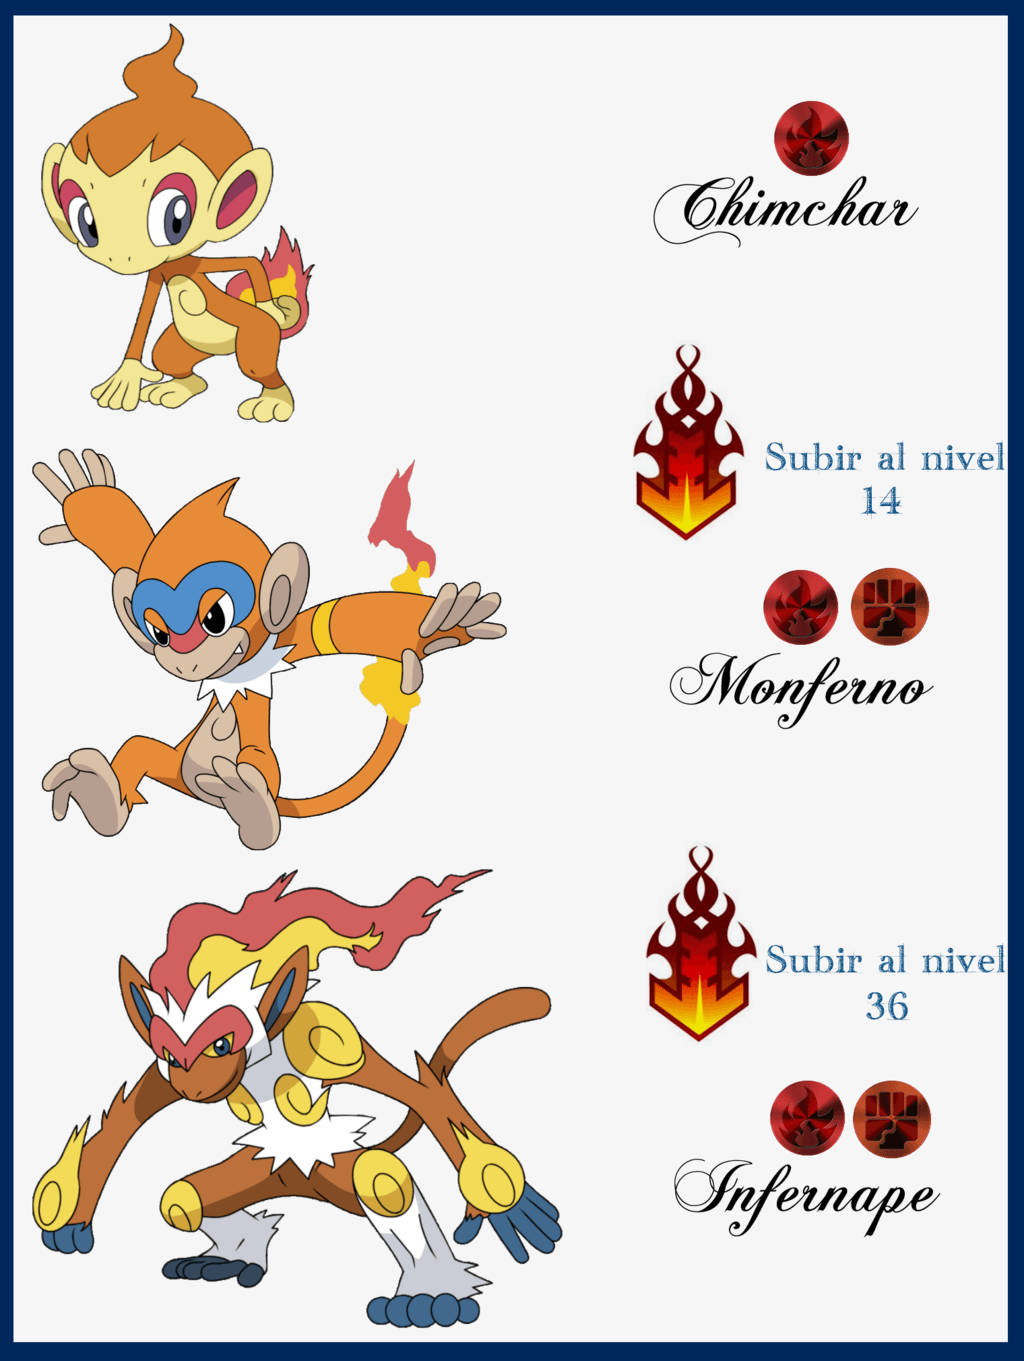 Pokemon Chimchar Simple Evolution Guide Wallpaper